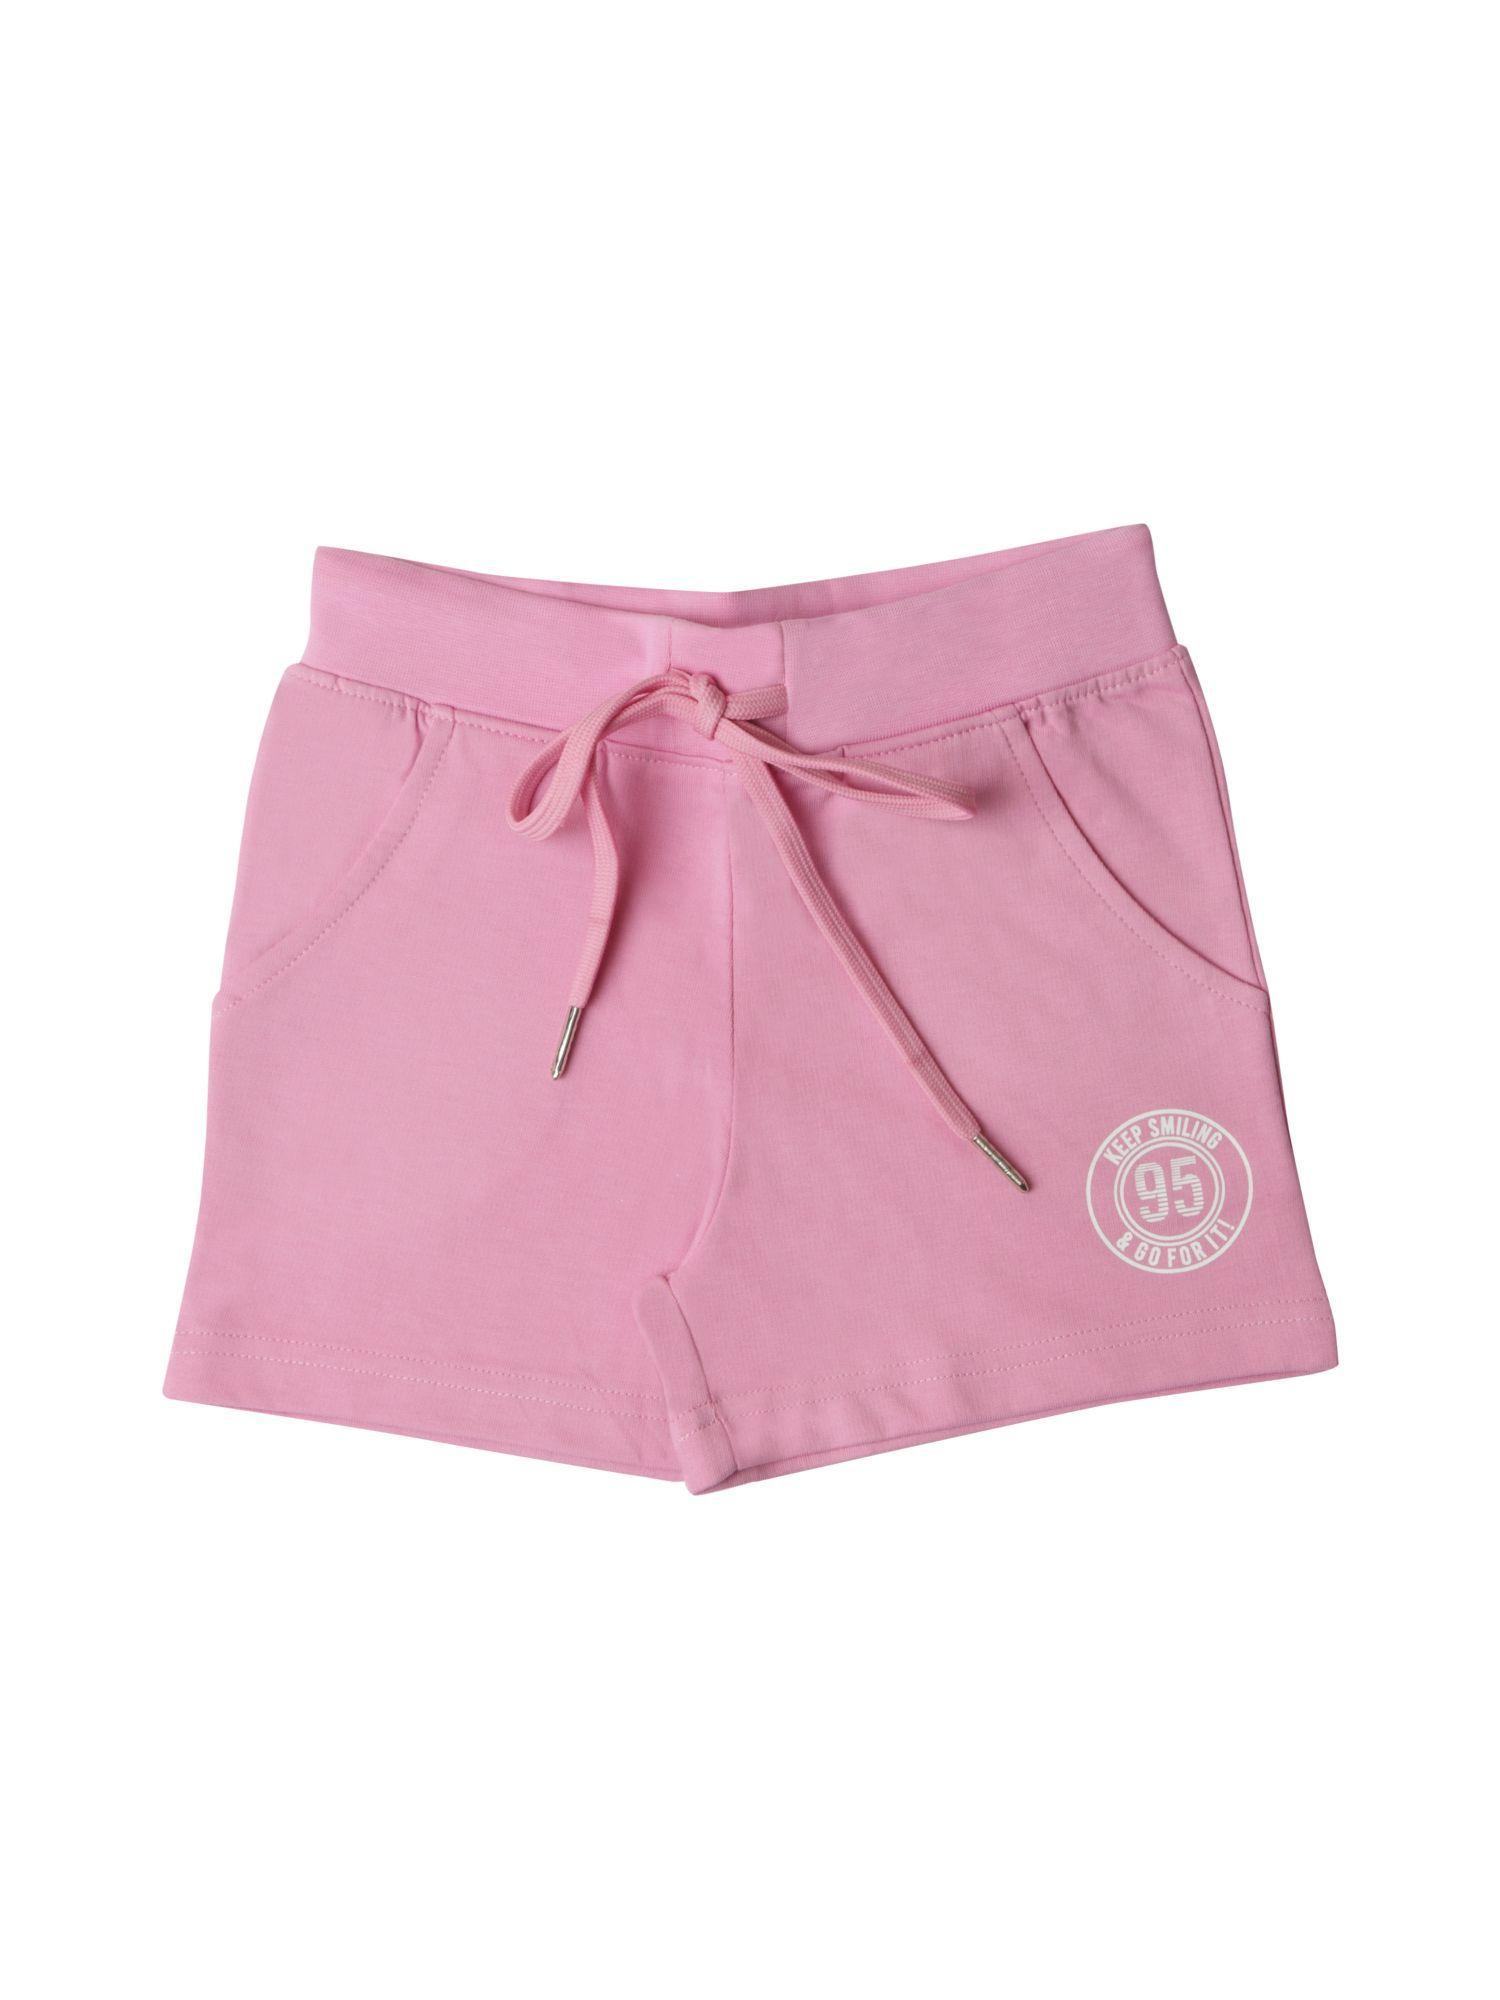 regular printed shorts pink